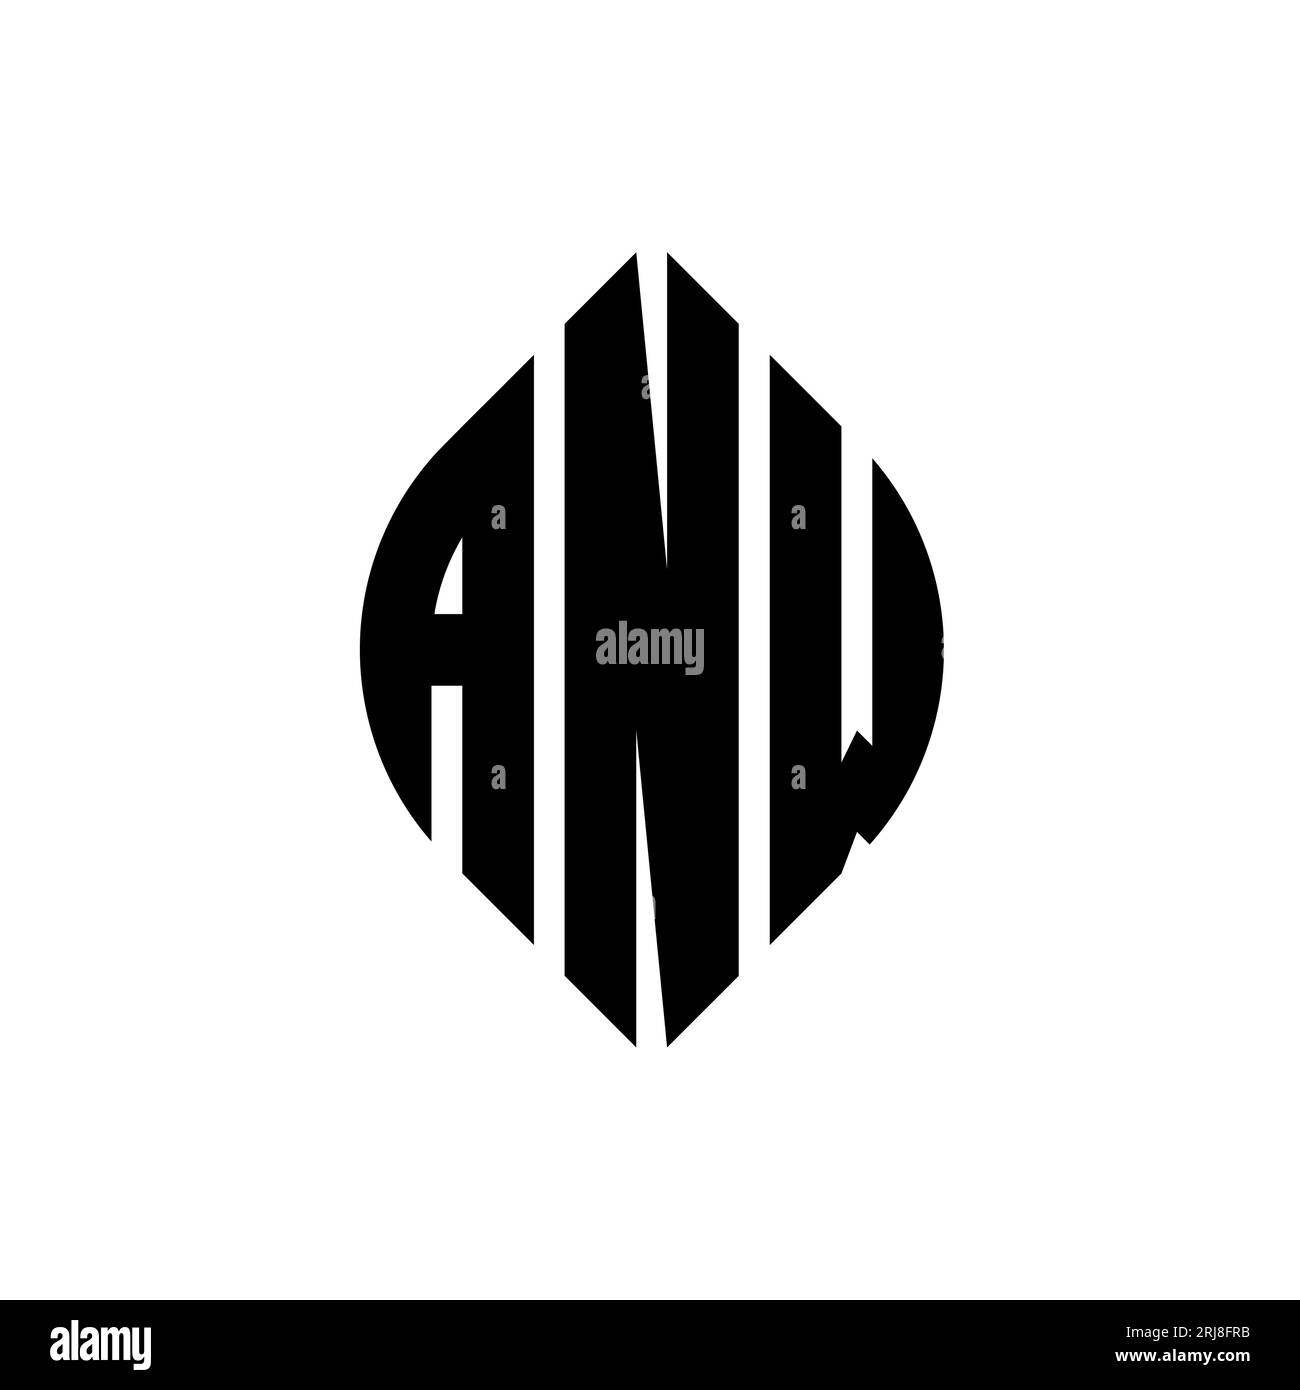 ANW kreisförmiges Logo mit Kreis- und Ellipsenform. ANW Ellipsenbuchstaben im typografischen Stil. Die drei Initialen bilden ein kreisförmiges Logo. ANW CI Stock Vektor